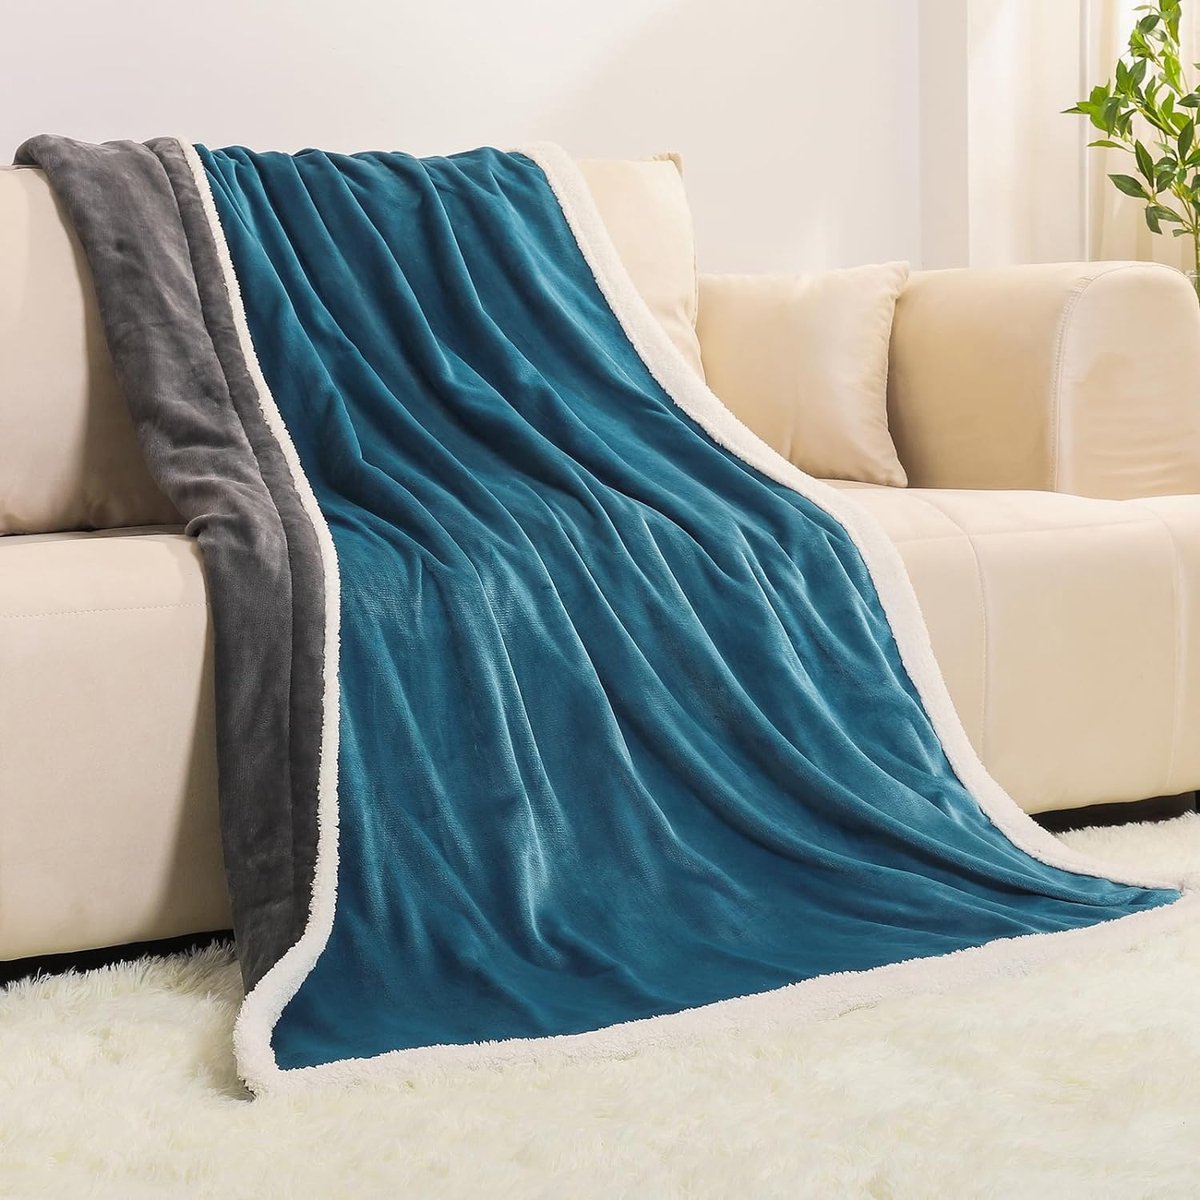 Elektrische deken 180 x 130 cm elektrische behaaglijke warmtedeken met automatische uitschakeling oververhittingsbeveiliging en 10 timers met 10 temperatuurniveaus wasbaar grijs en blauw